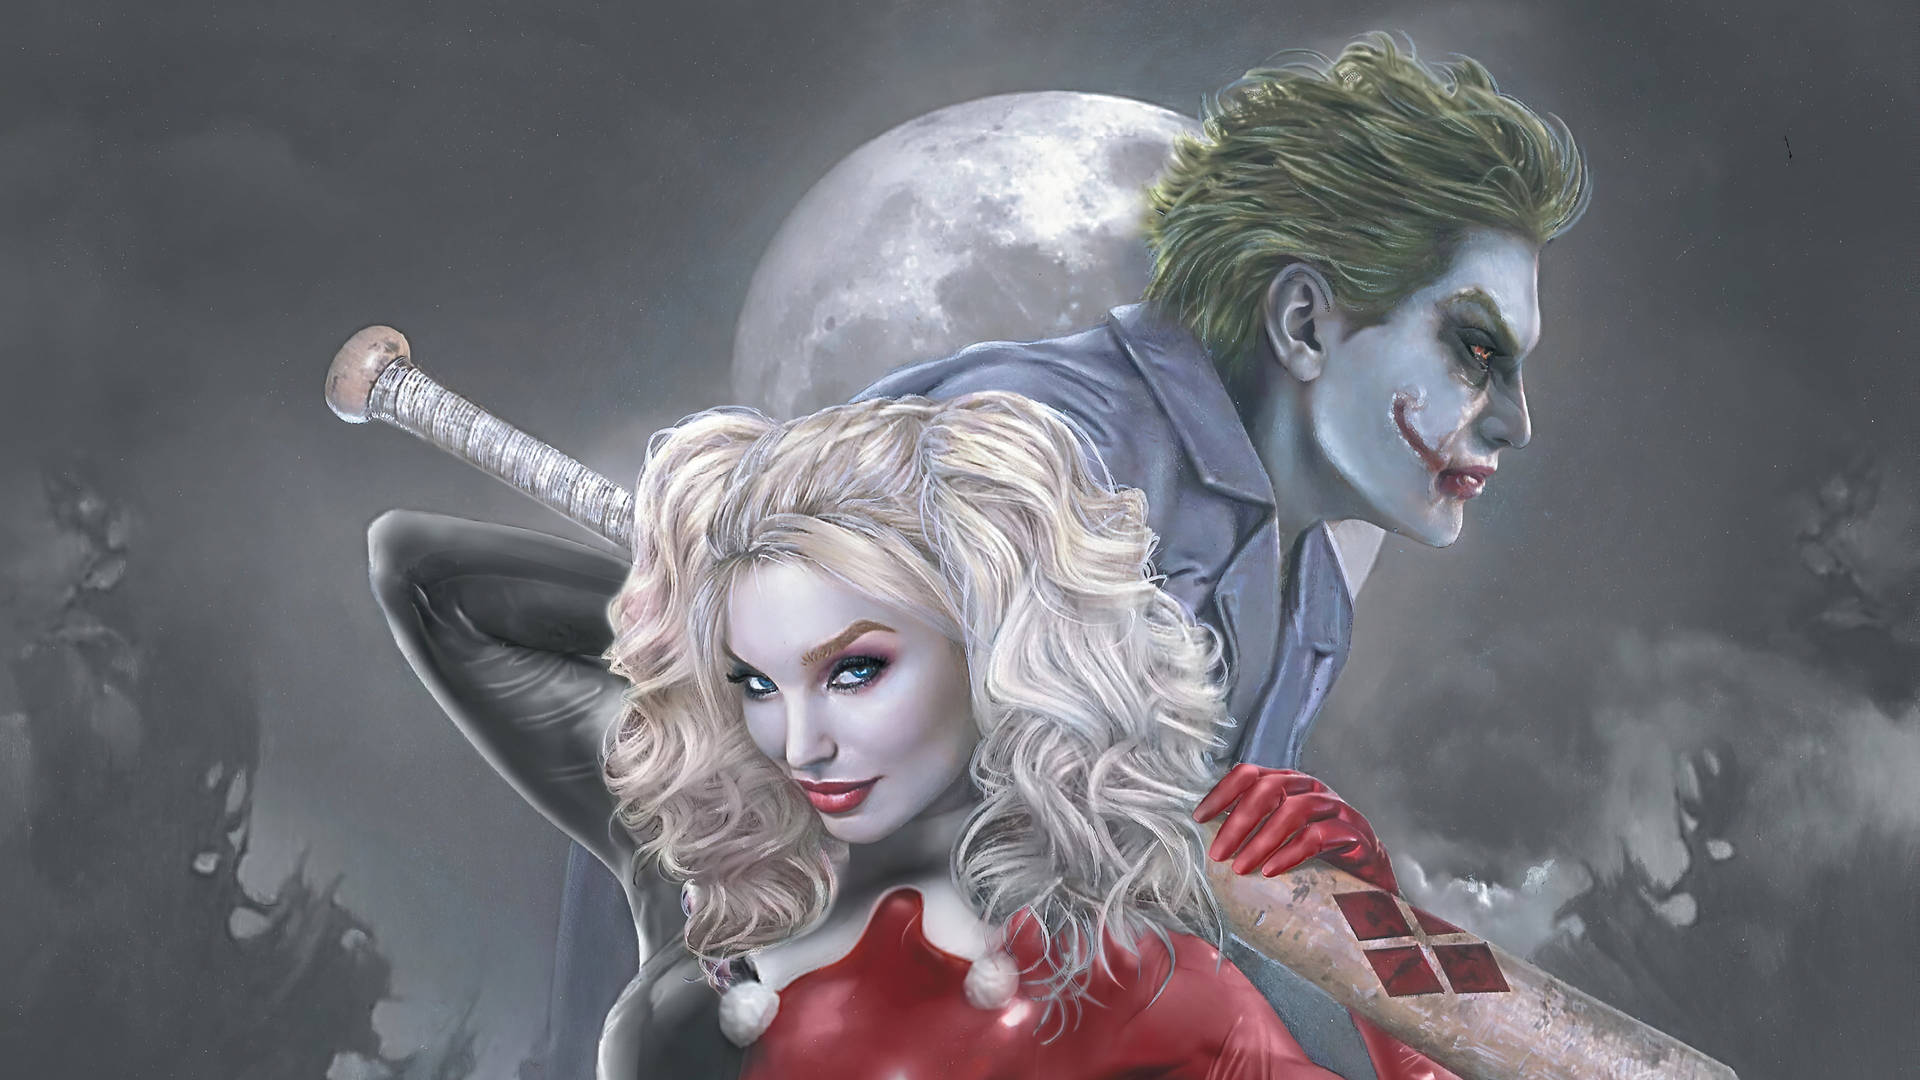 Full Moon Joker And Harley Quinn Wallpaper